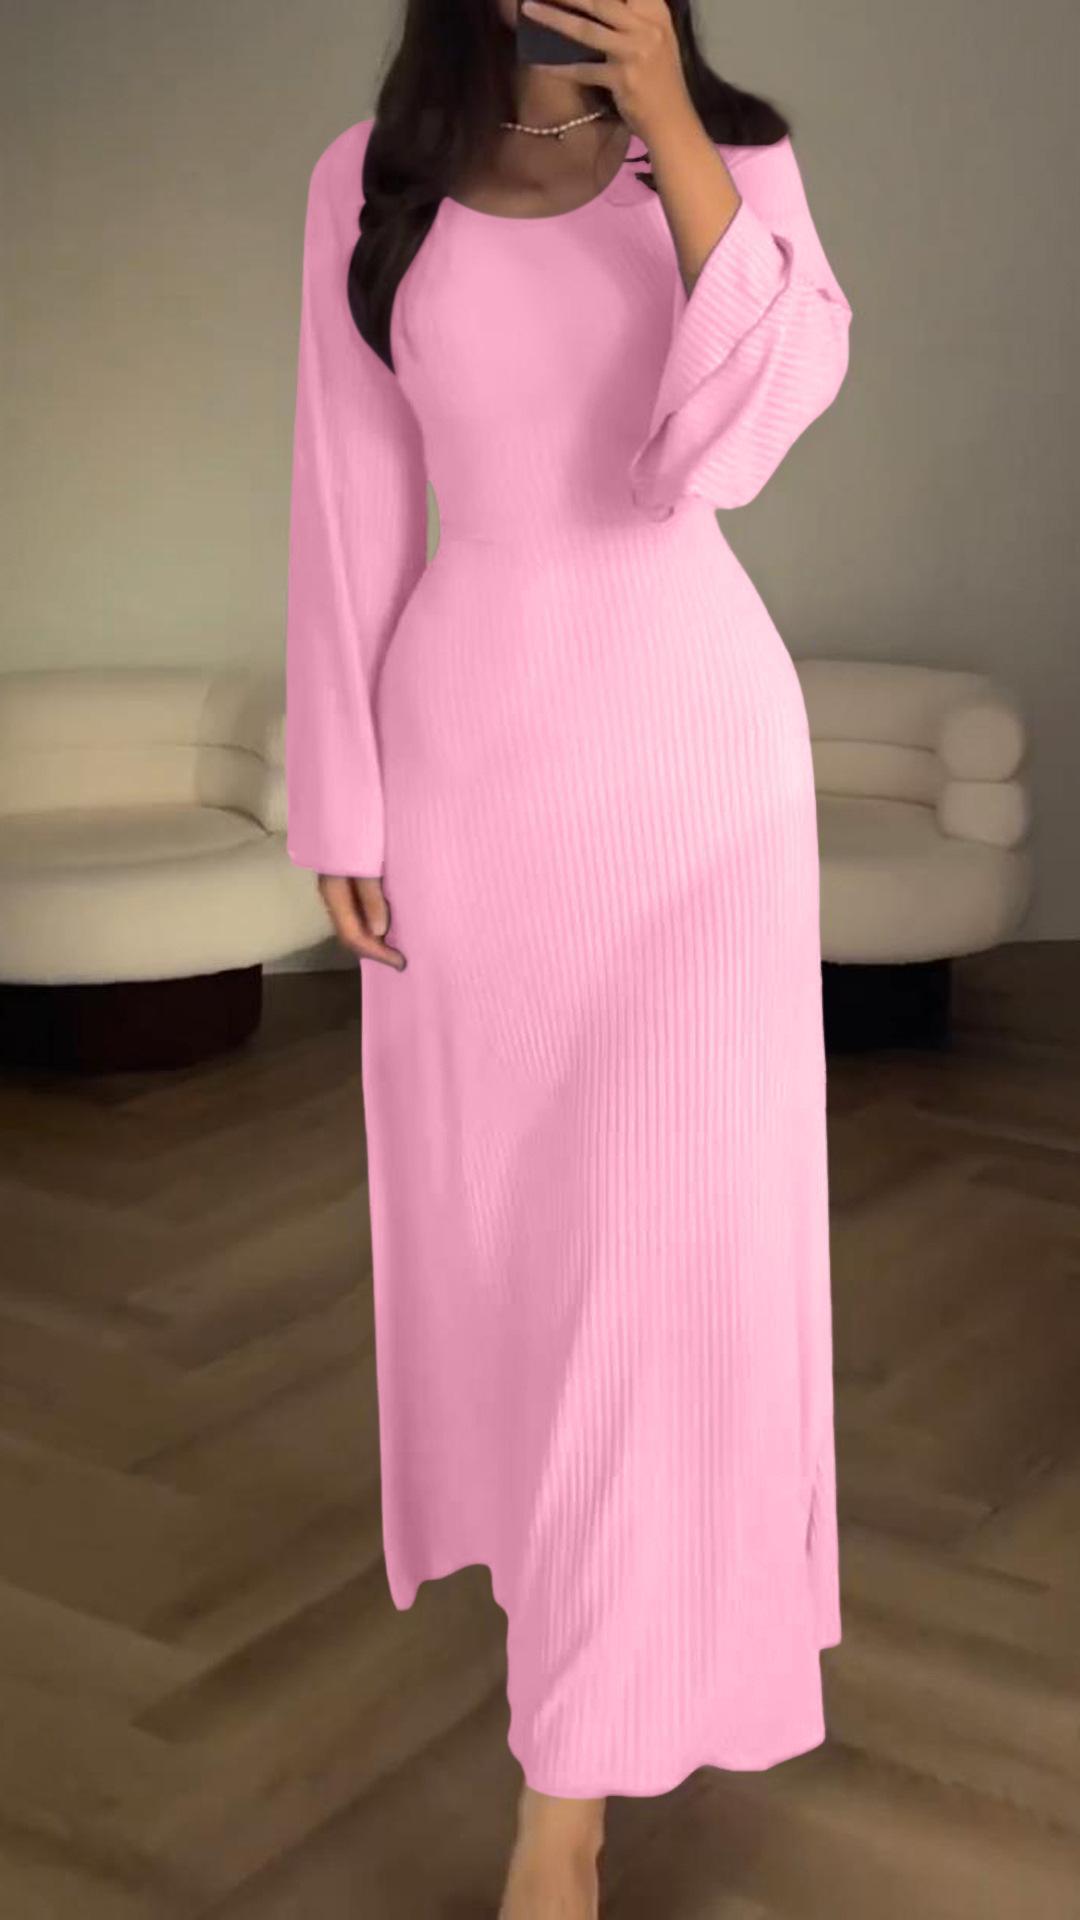 Elegant tie-waist knitted dress